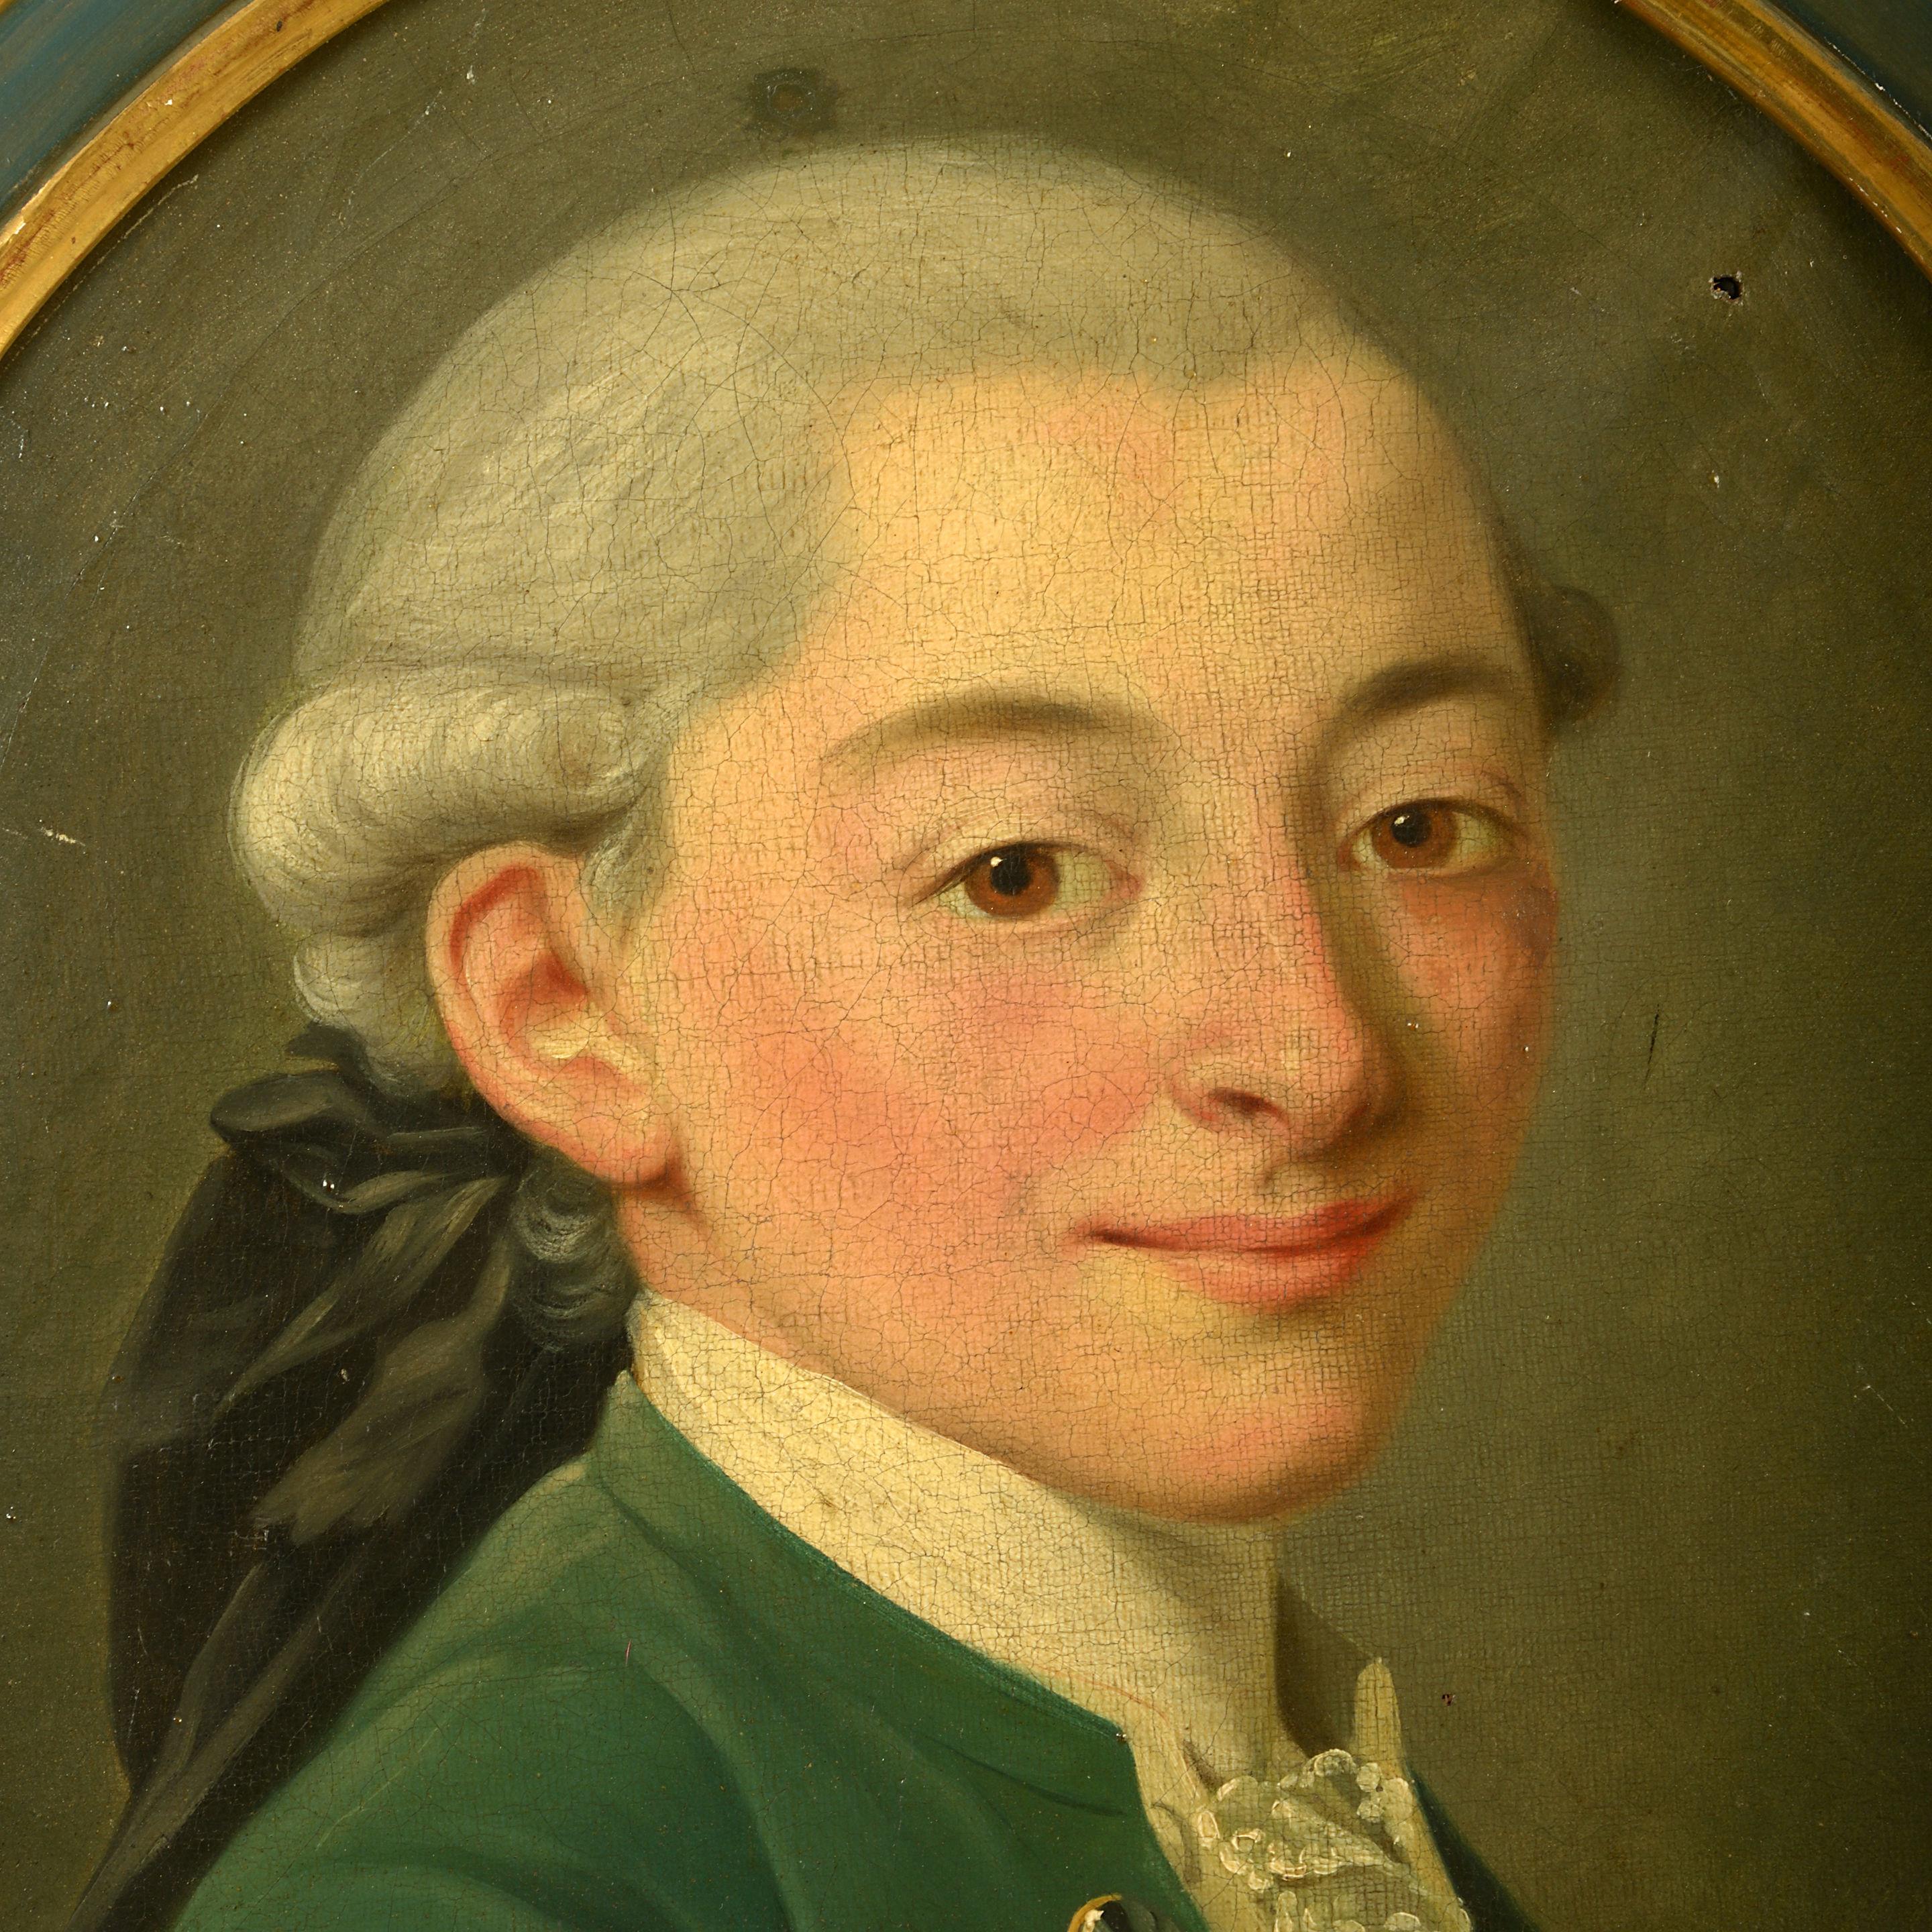 Ovale Porträts aus dem späten 18. Jahrhundert:: die junge Brüder darstellen.